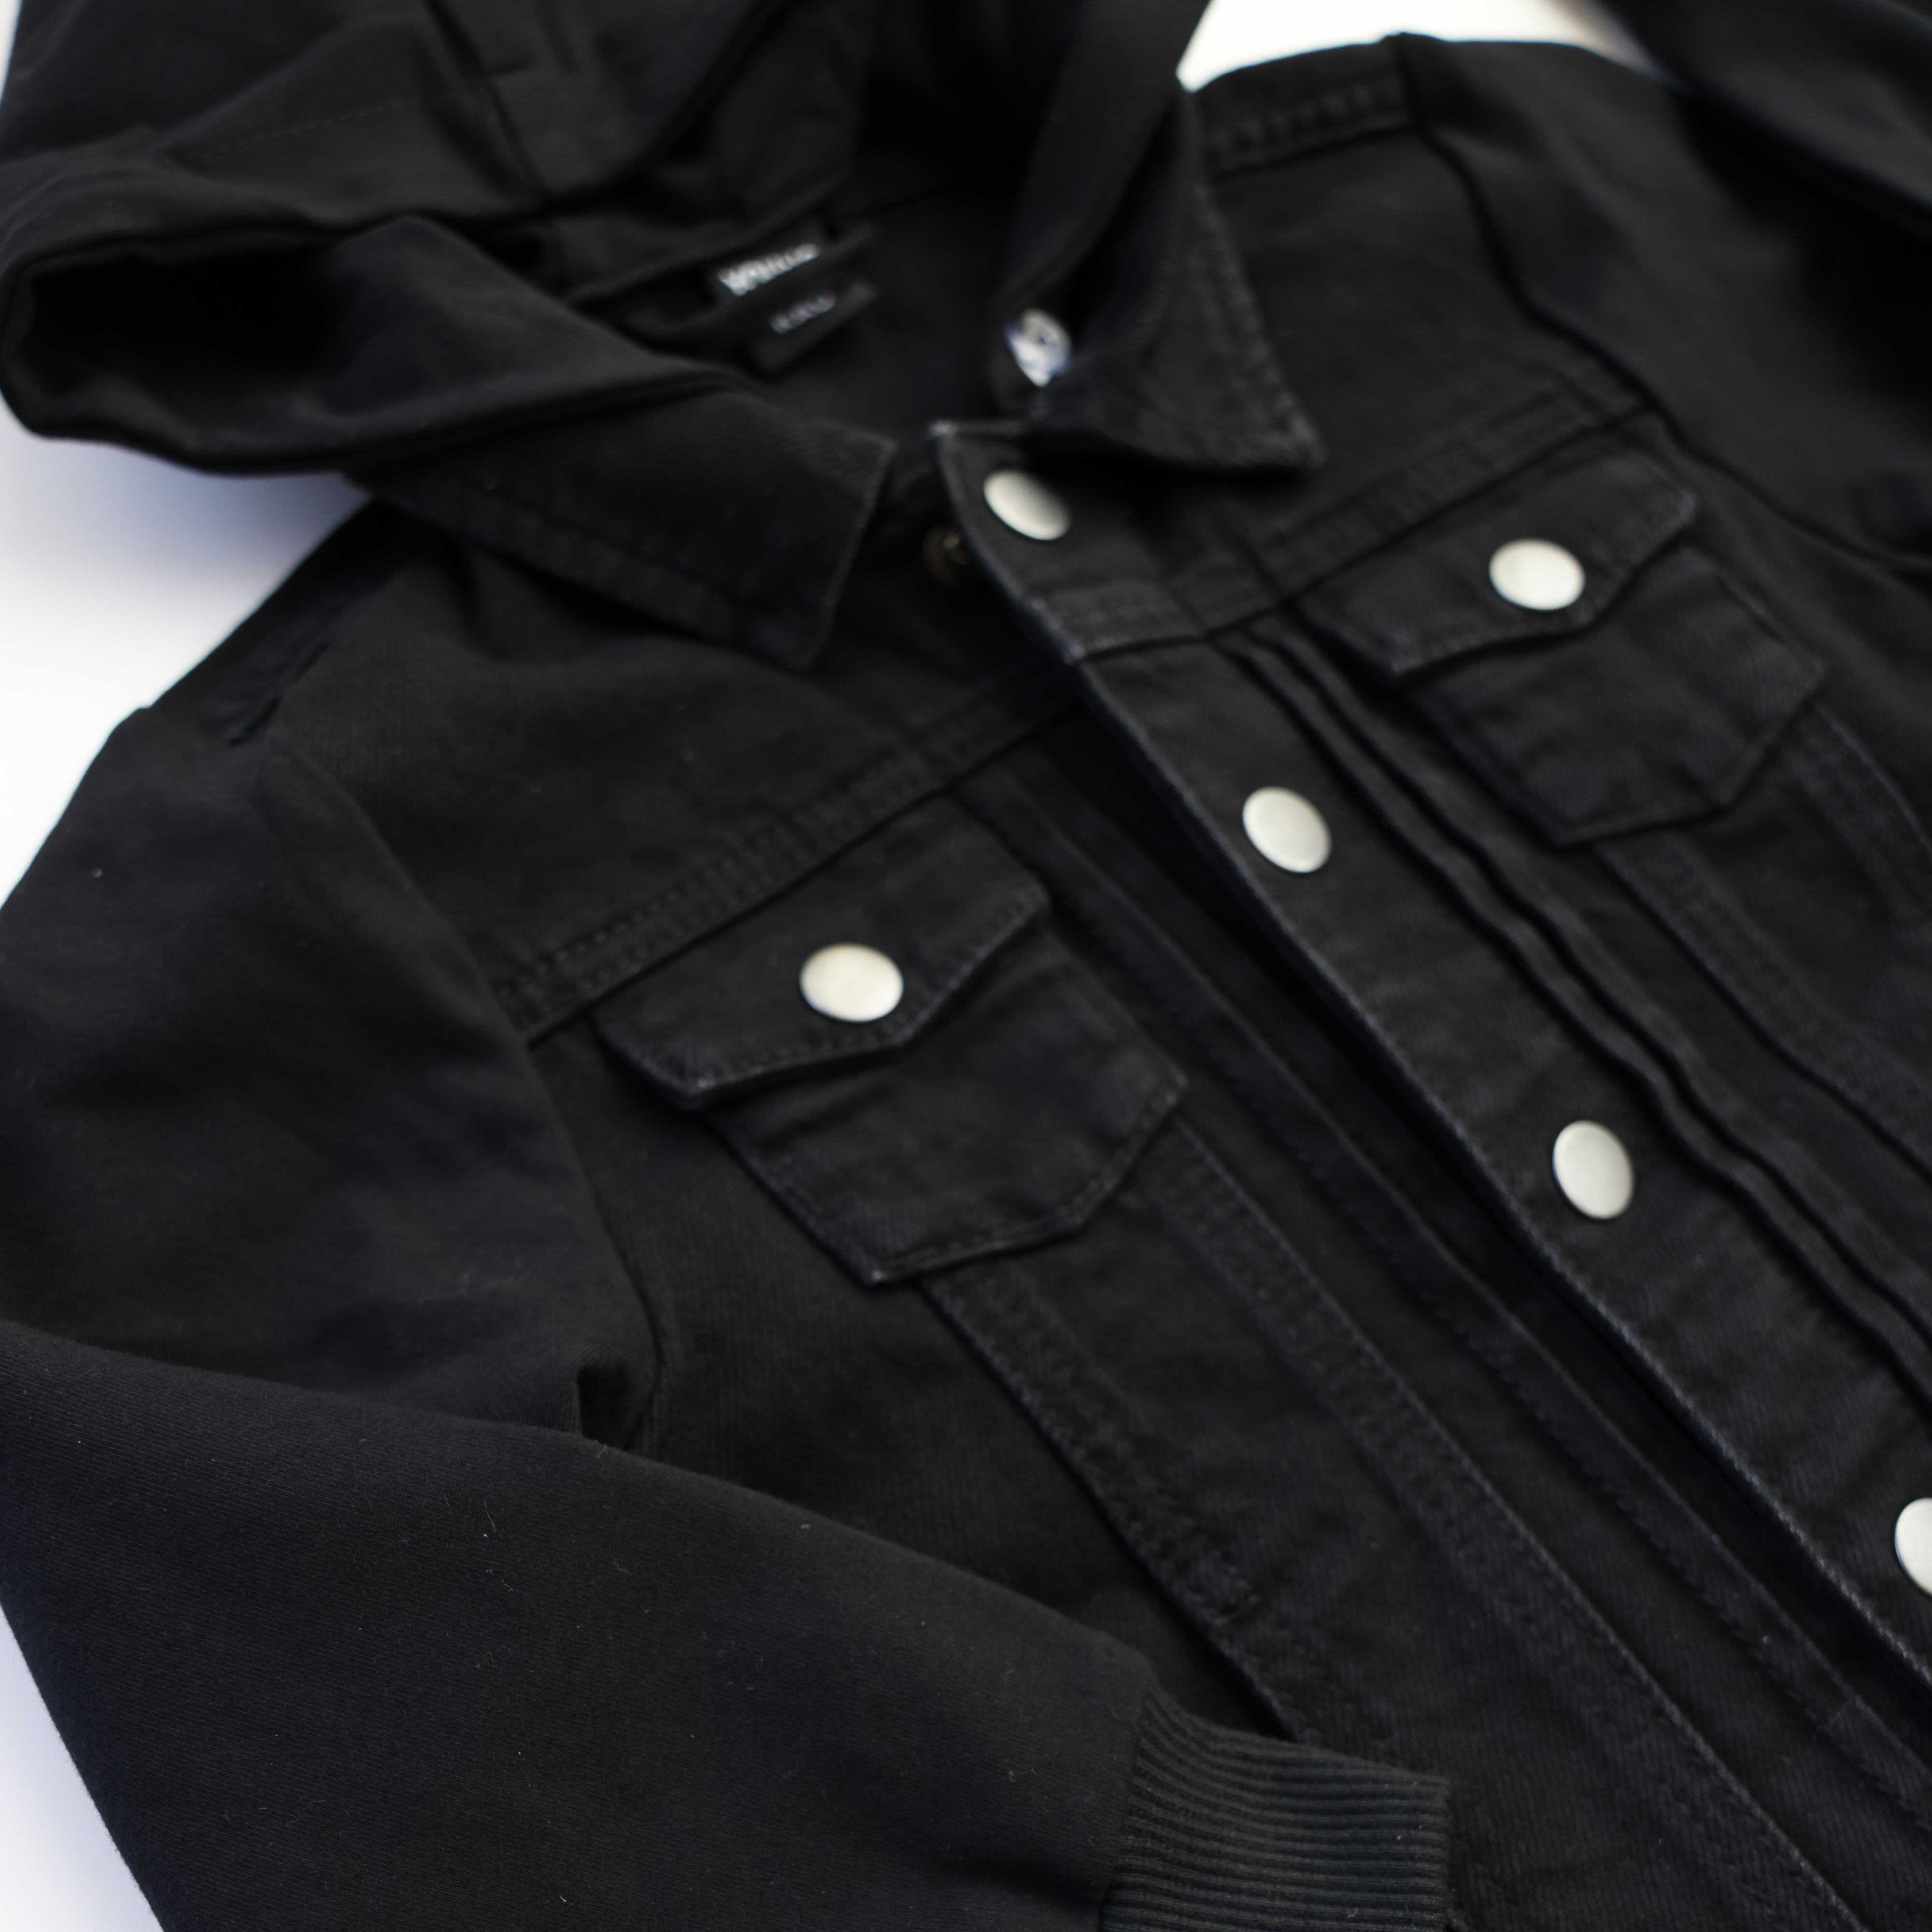 Black Hooded Jacket (Size Up 1-2 sizes)